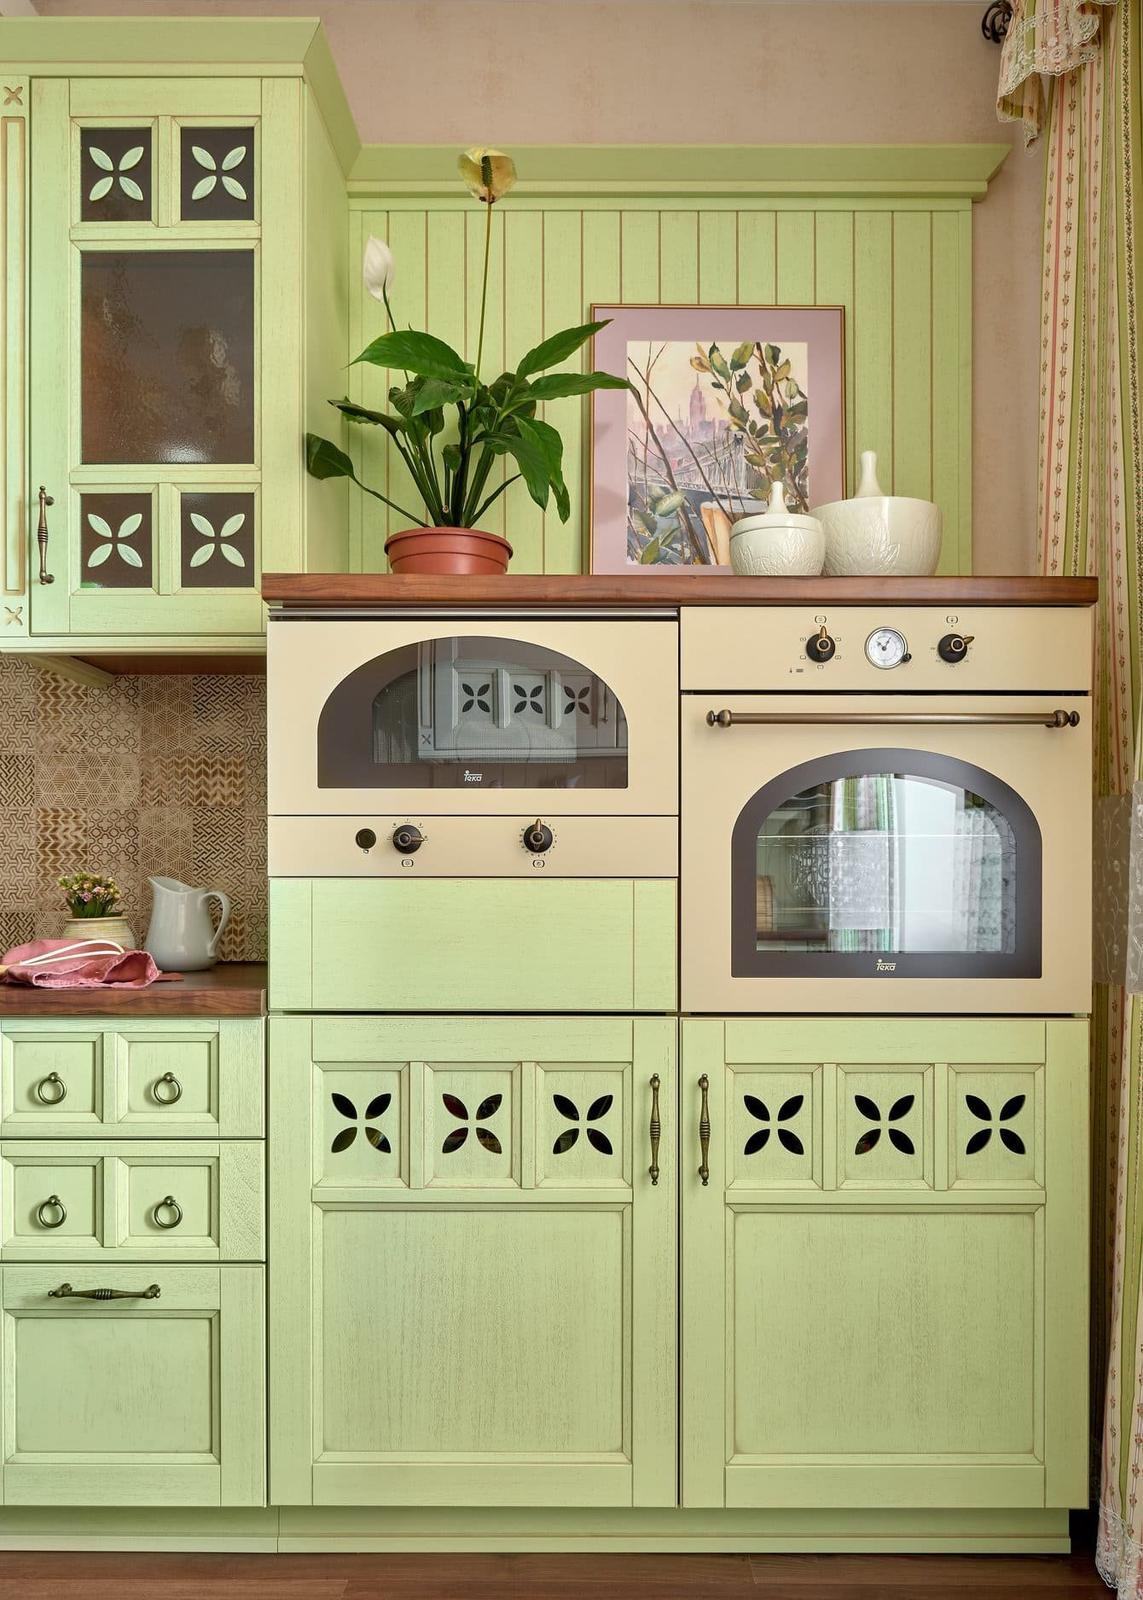 Byt se světle zelenou kuchyní - Bydlo.cz - inspirace bydlení, interiér, architektura